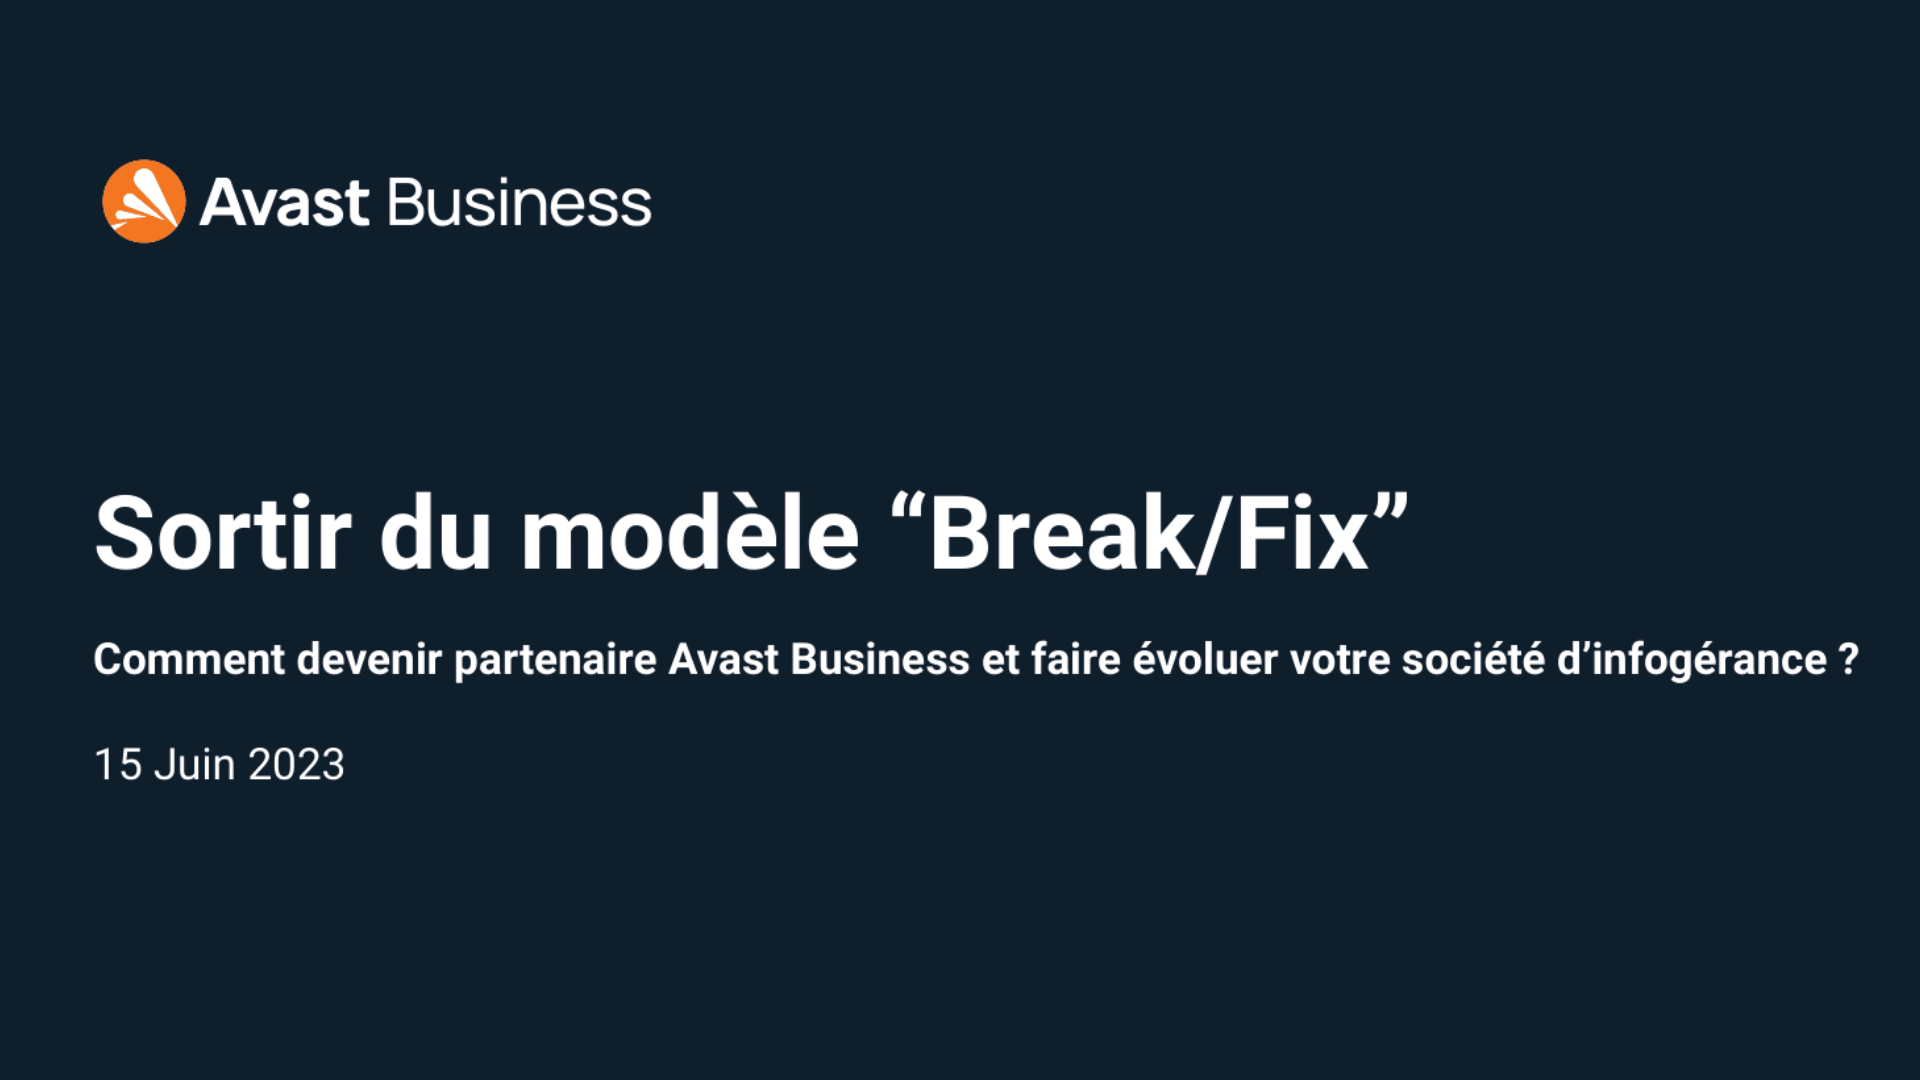 Livre blanc Avast Business – Sortir du modèle “Break/Fix”